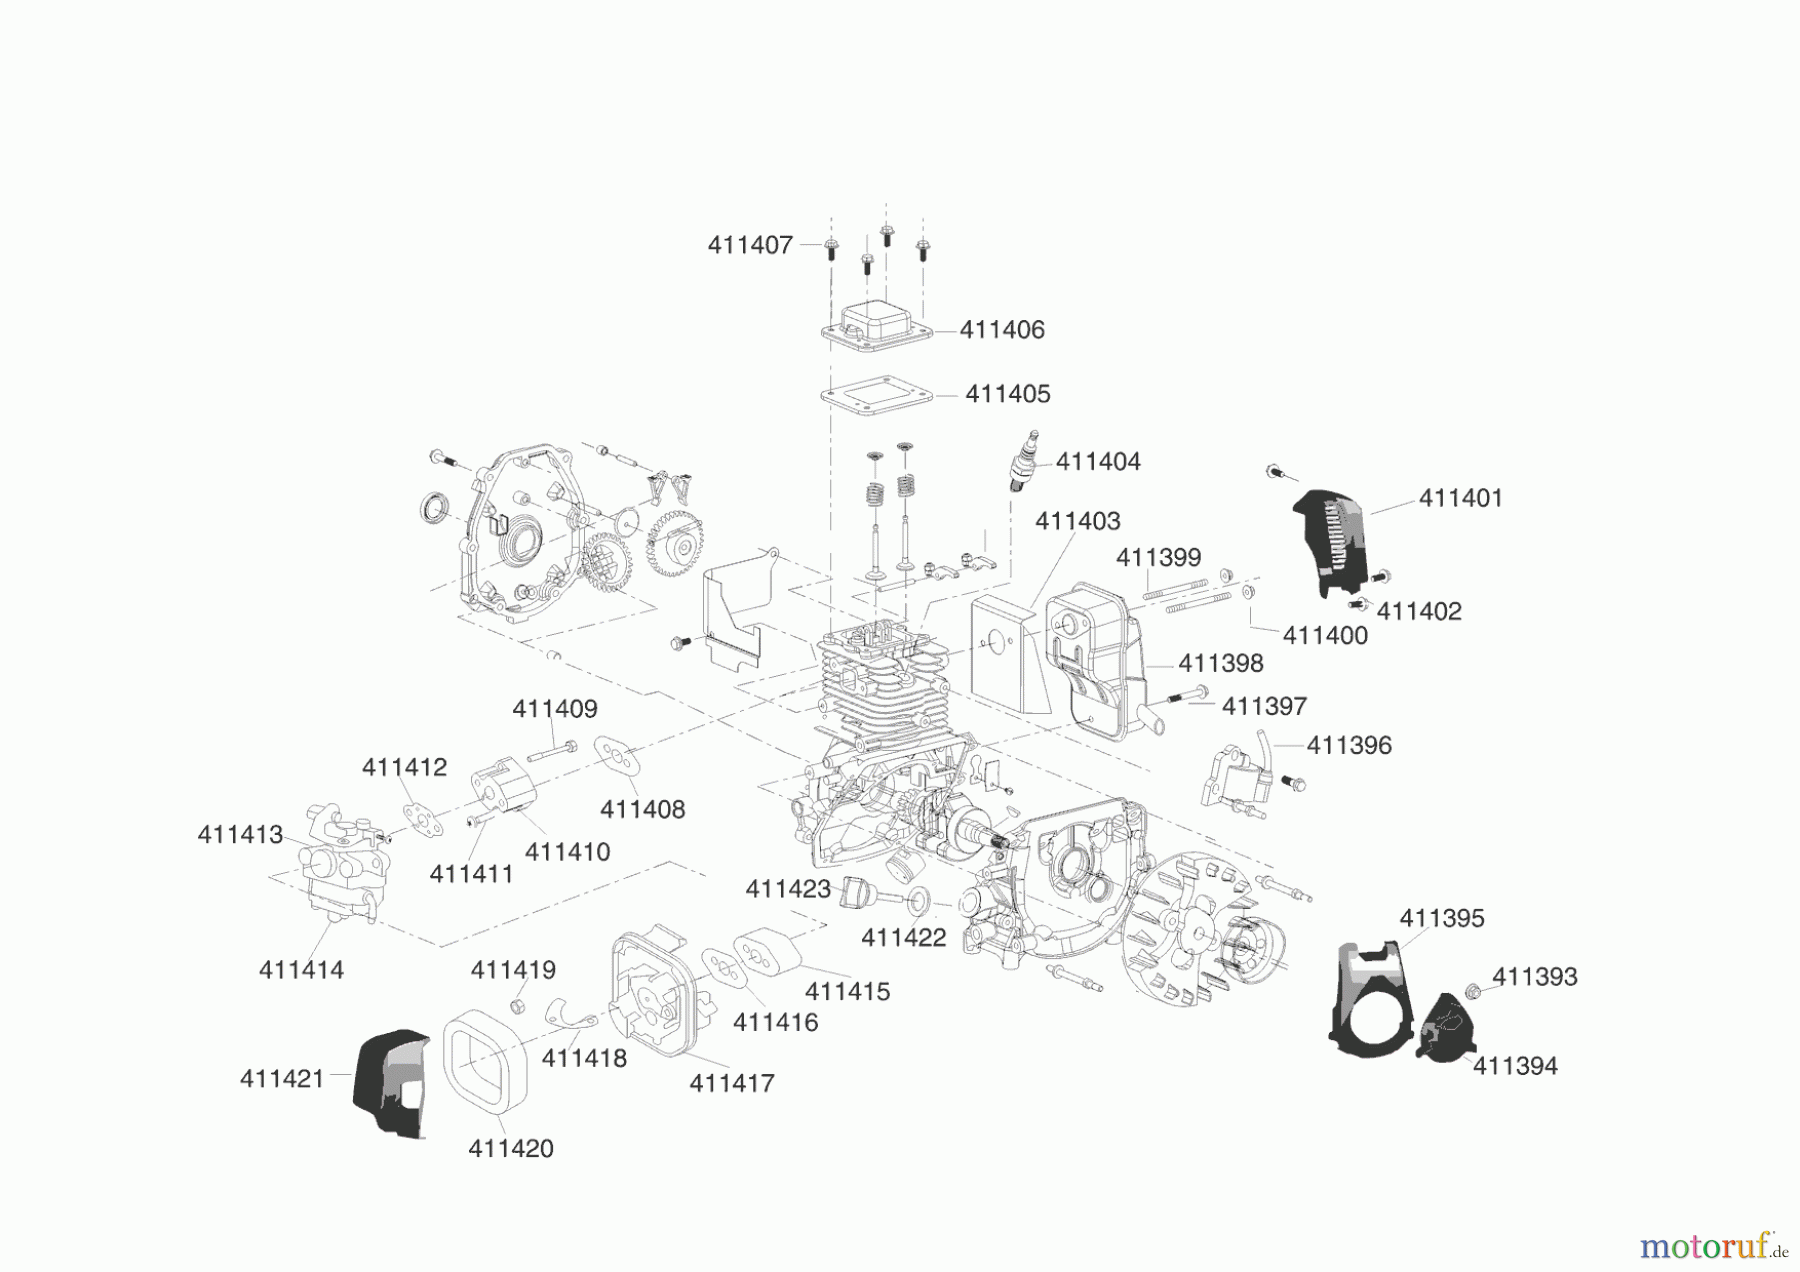  AL-KO Gartentechnik Benzinmotoren MOTOR 144F Seite 1